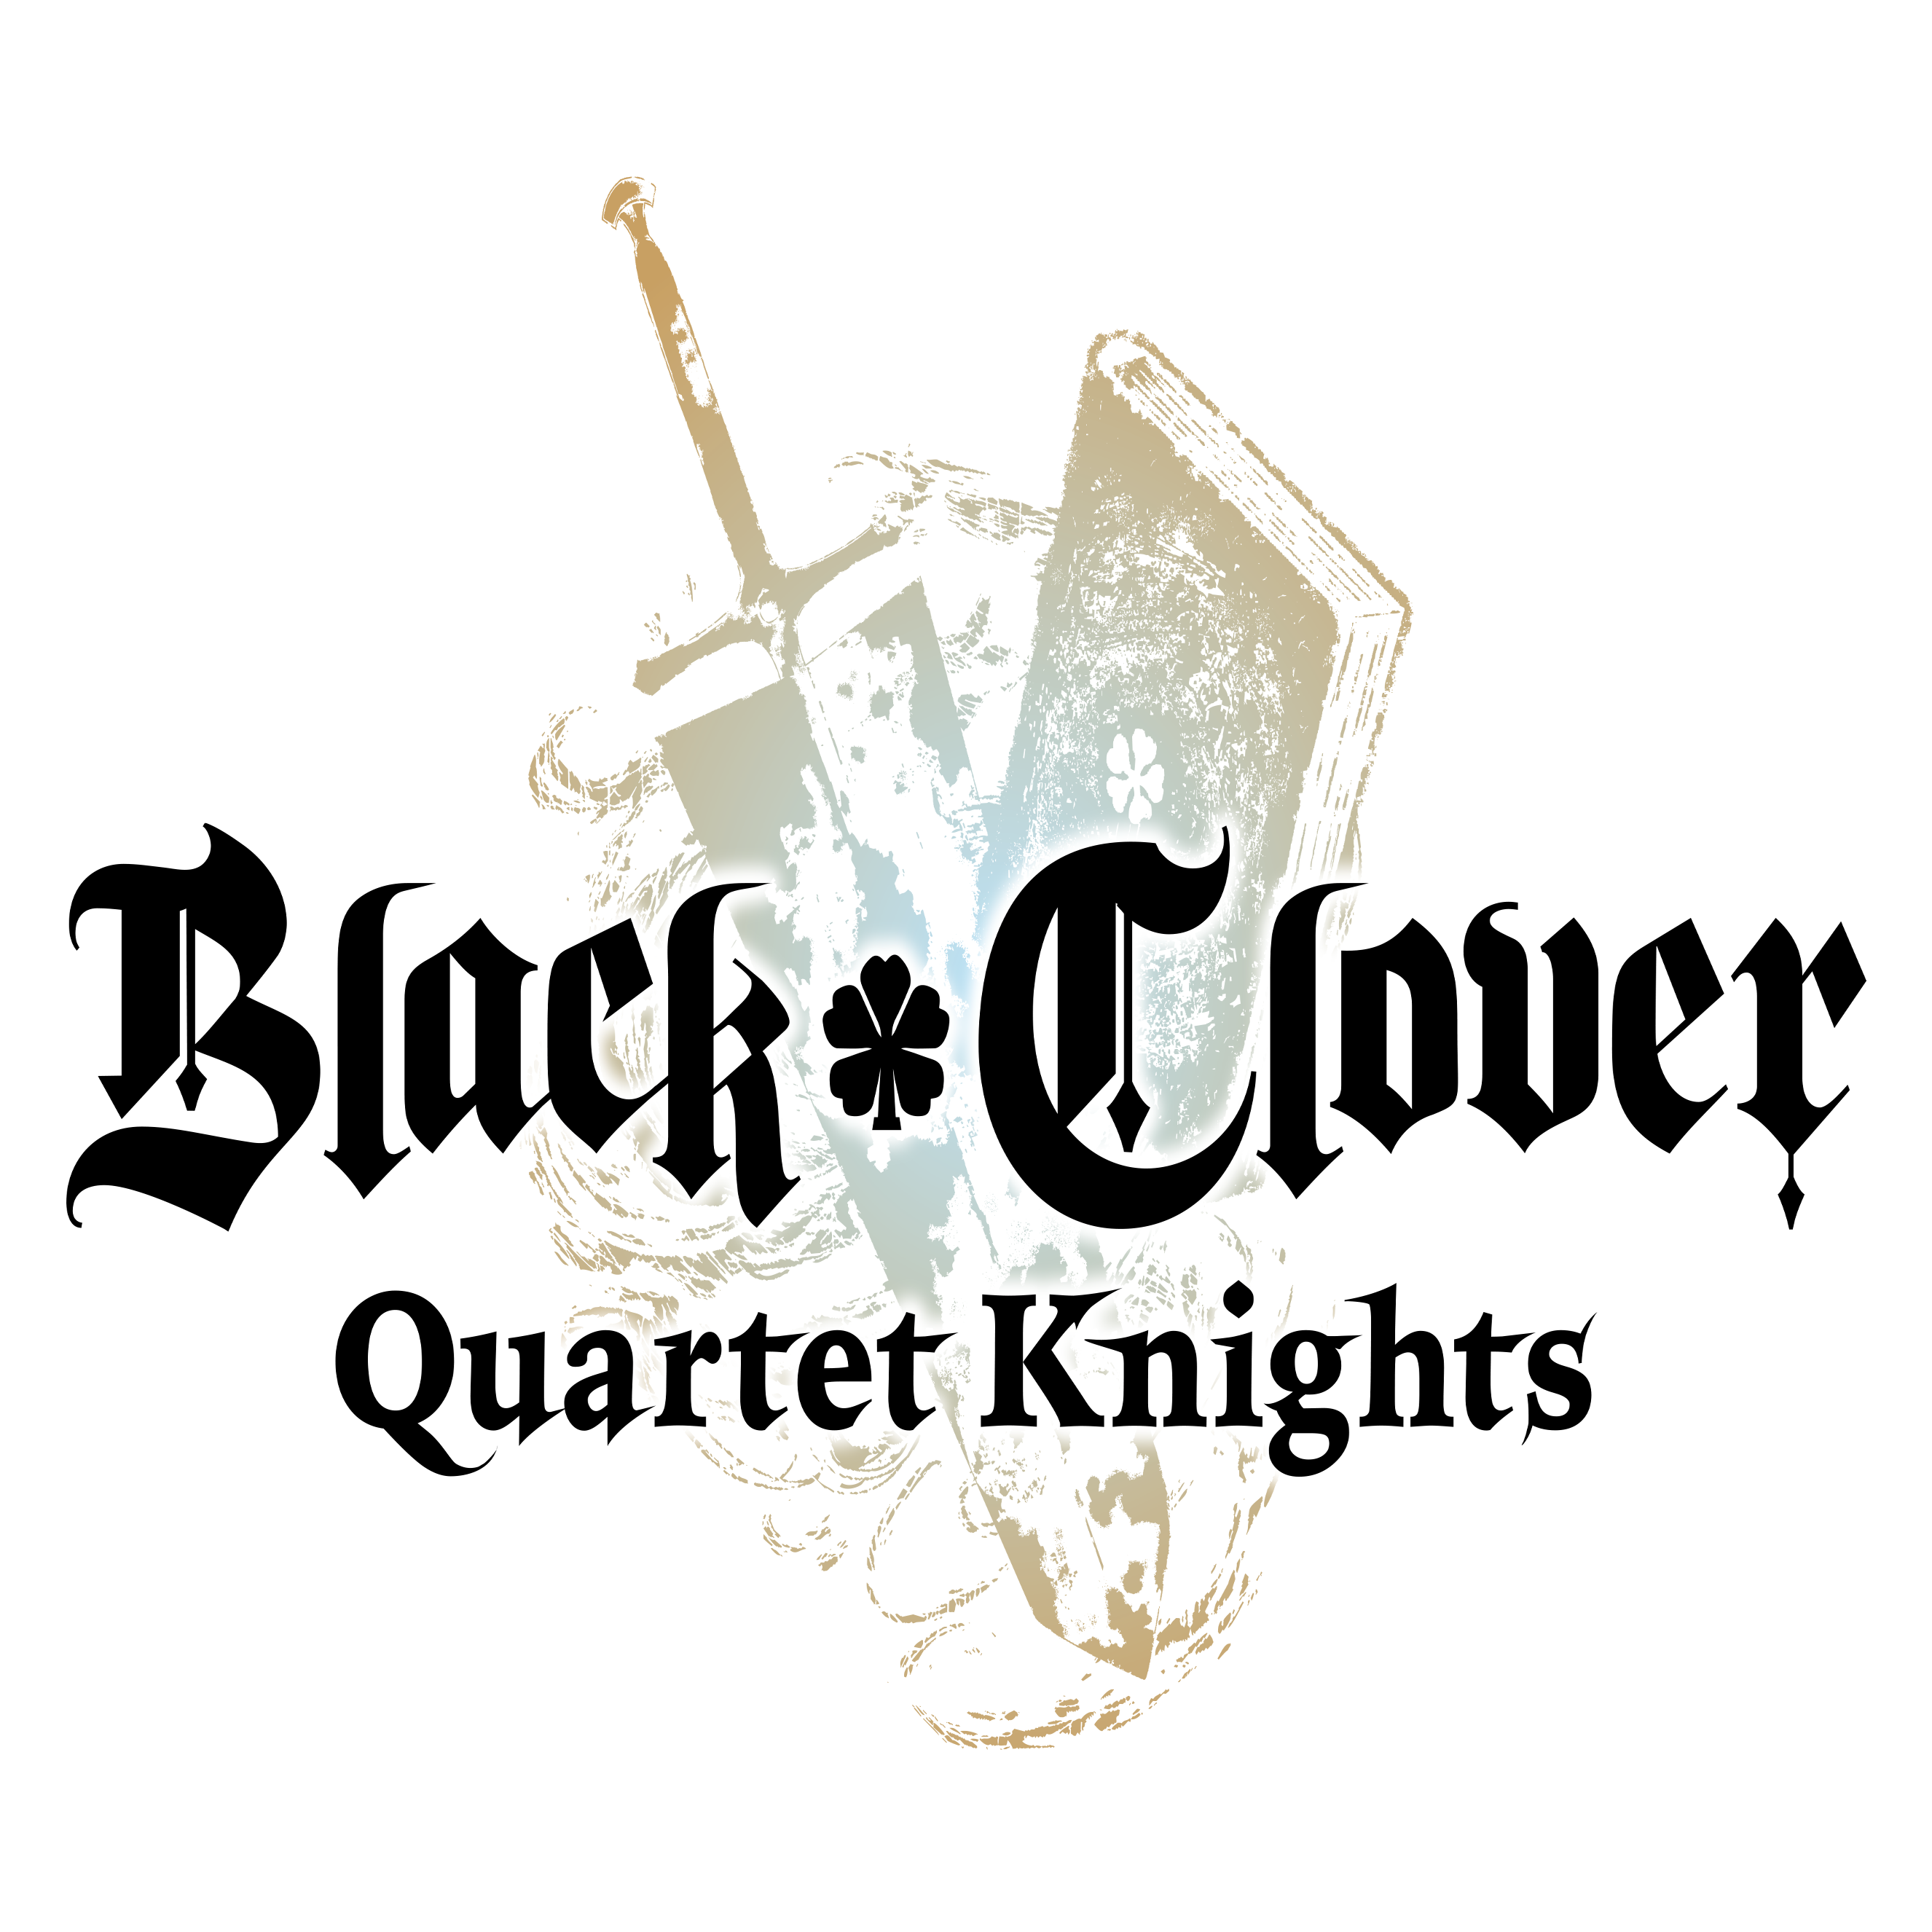 Black Clover Quartet Knights nu verkrijgbaar